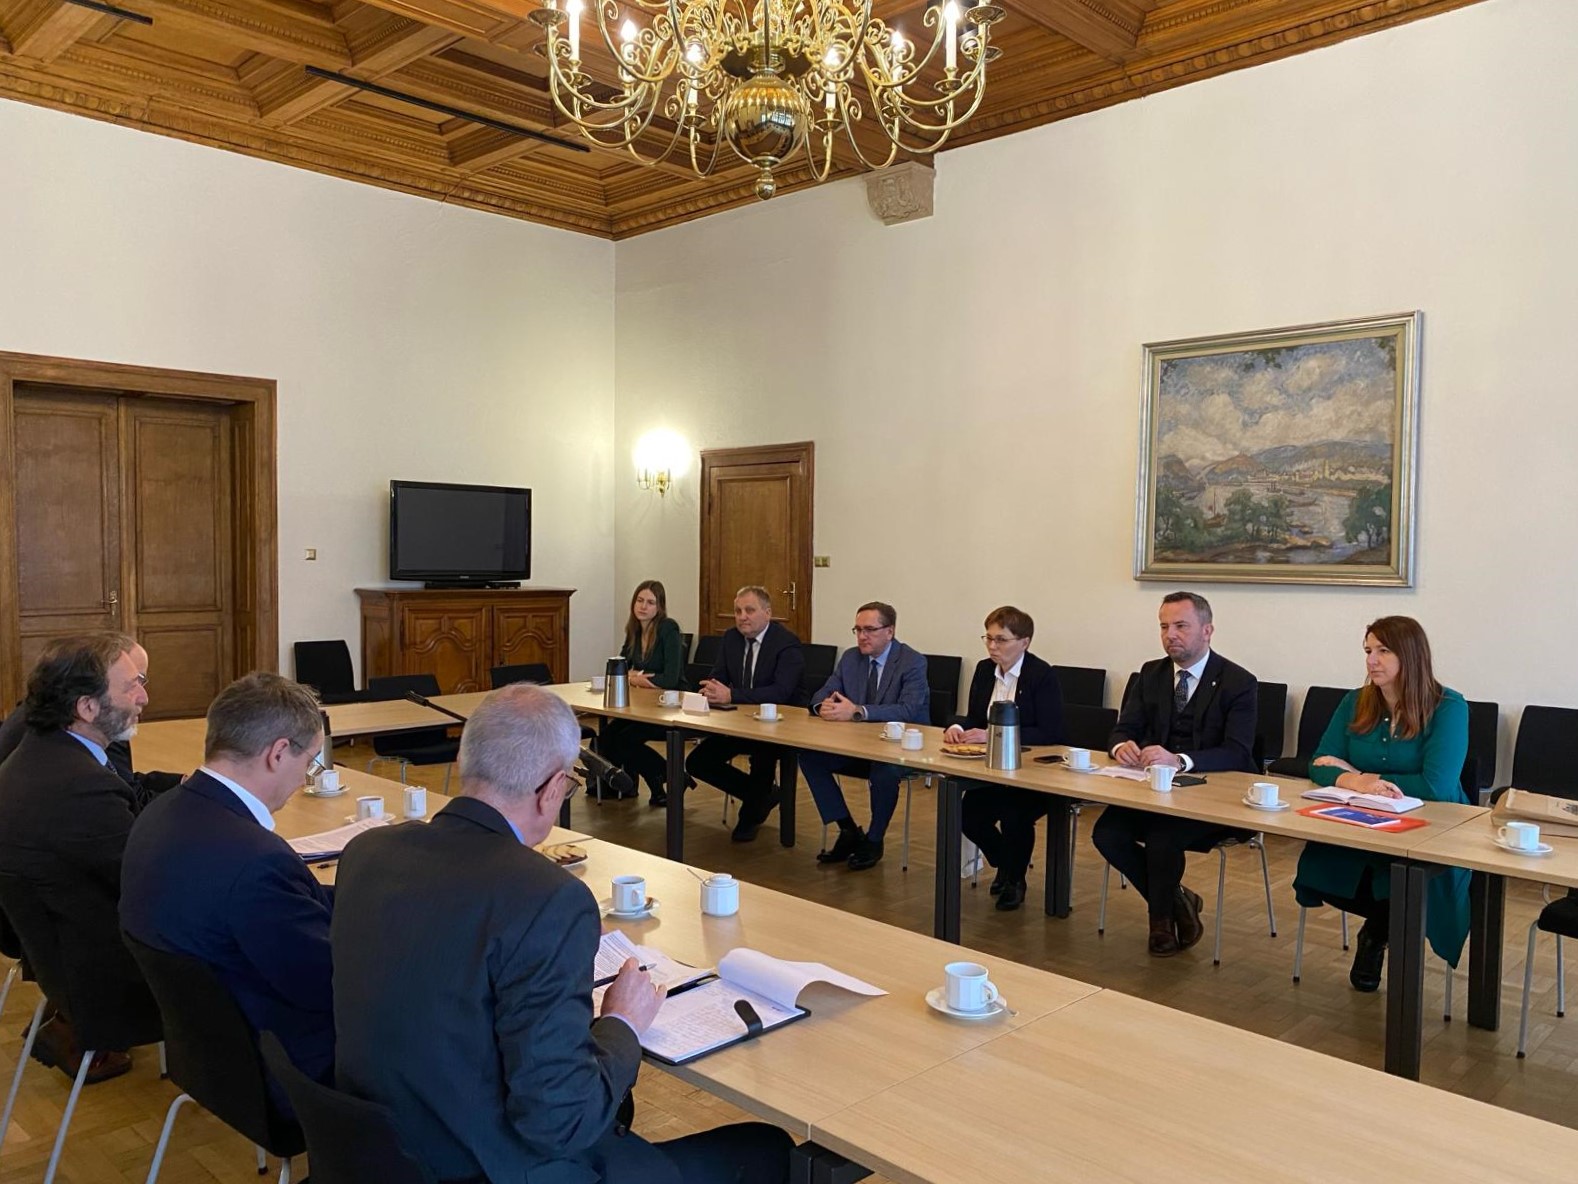 Das Treffen fand im Deutschen Generalkonsulat in Breslau statt.Foto: VdG/facebook.com